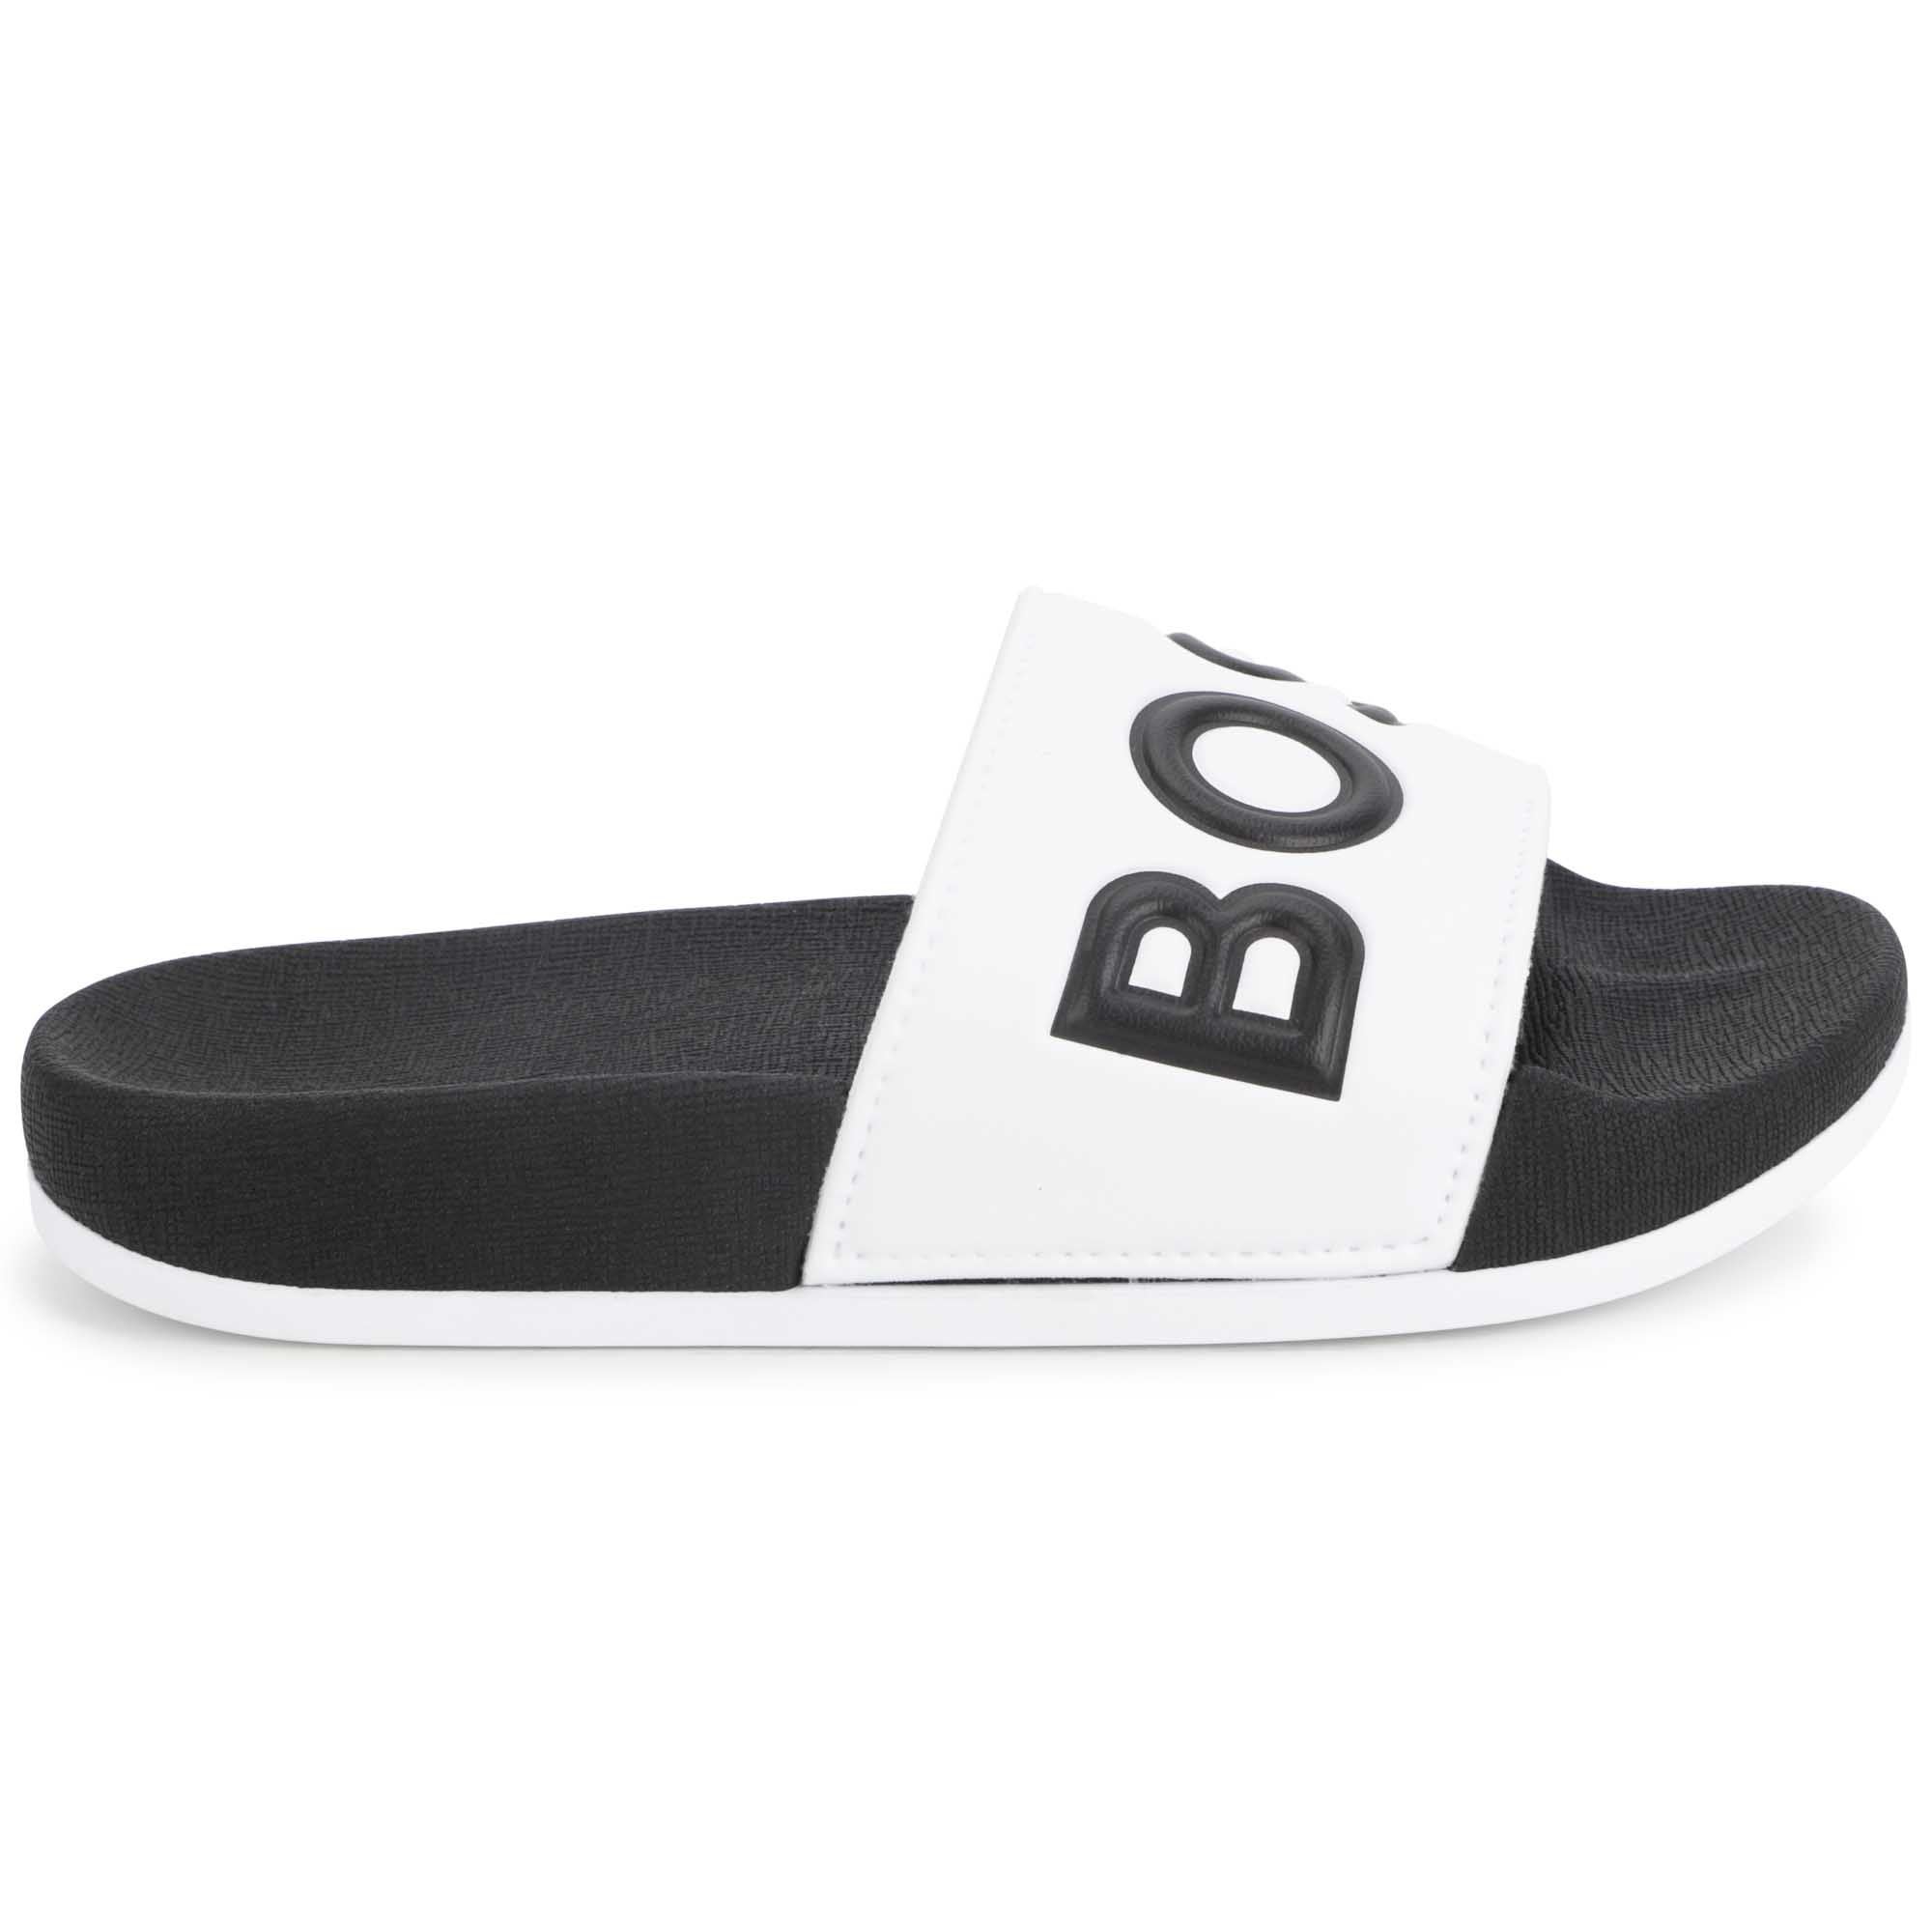 HUGO BOSS Black & White Sliders